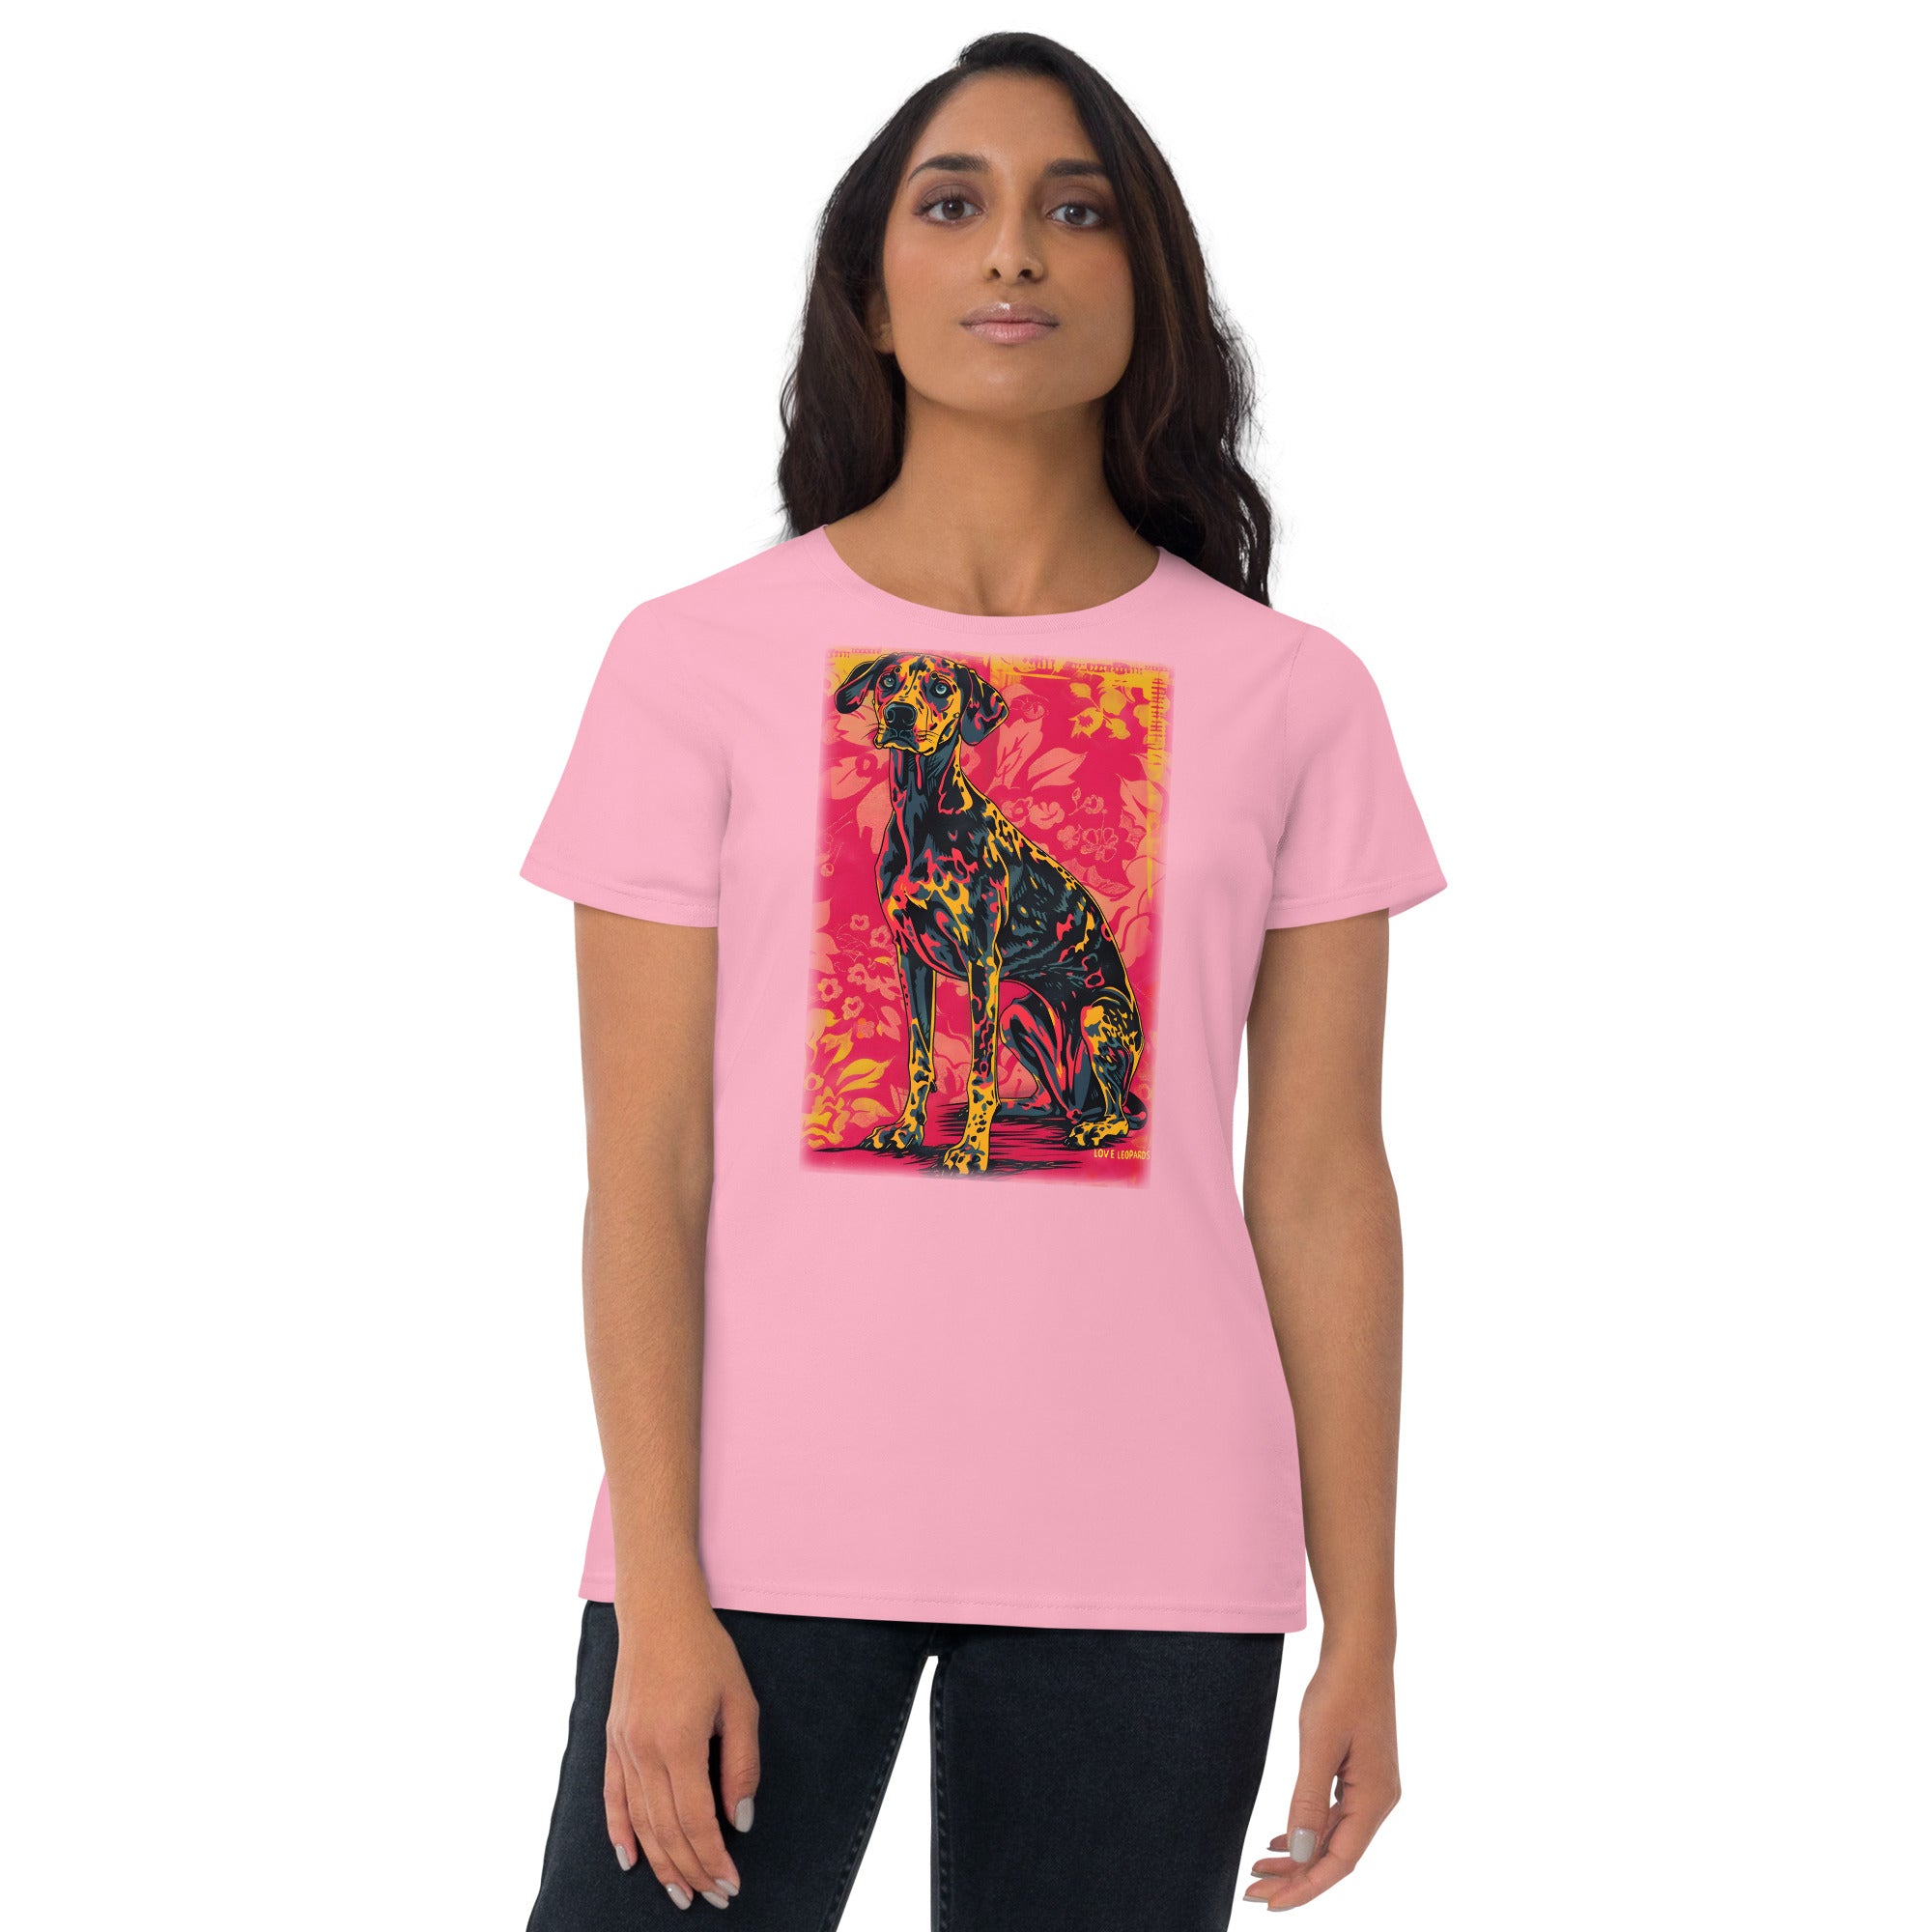 American Leopard Hound Women's short sleeve t-shirt